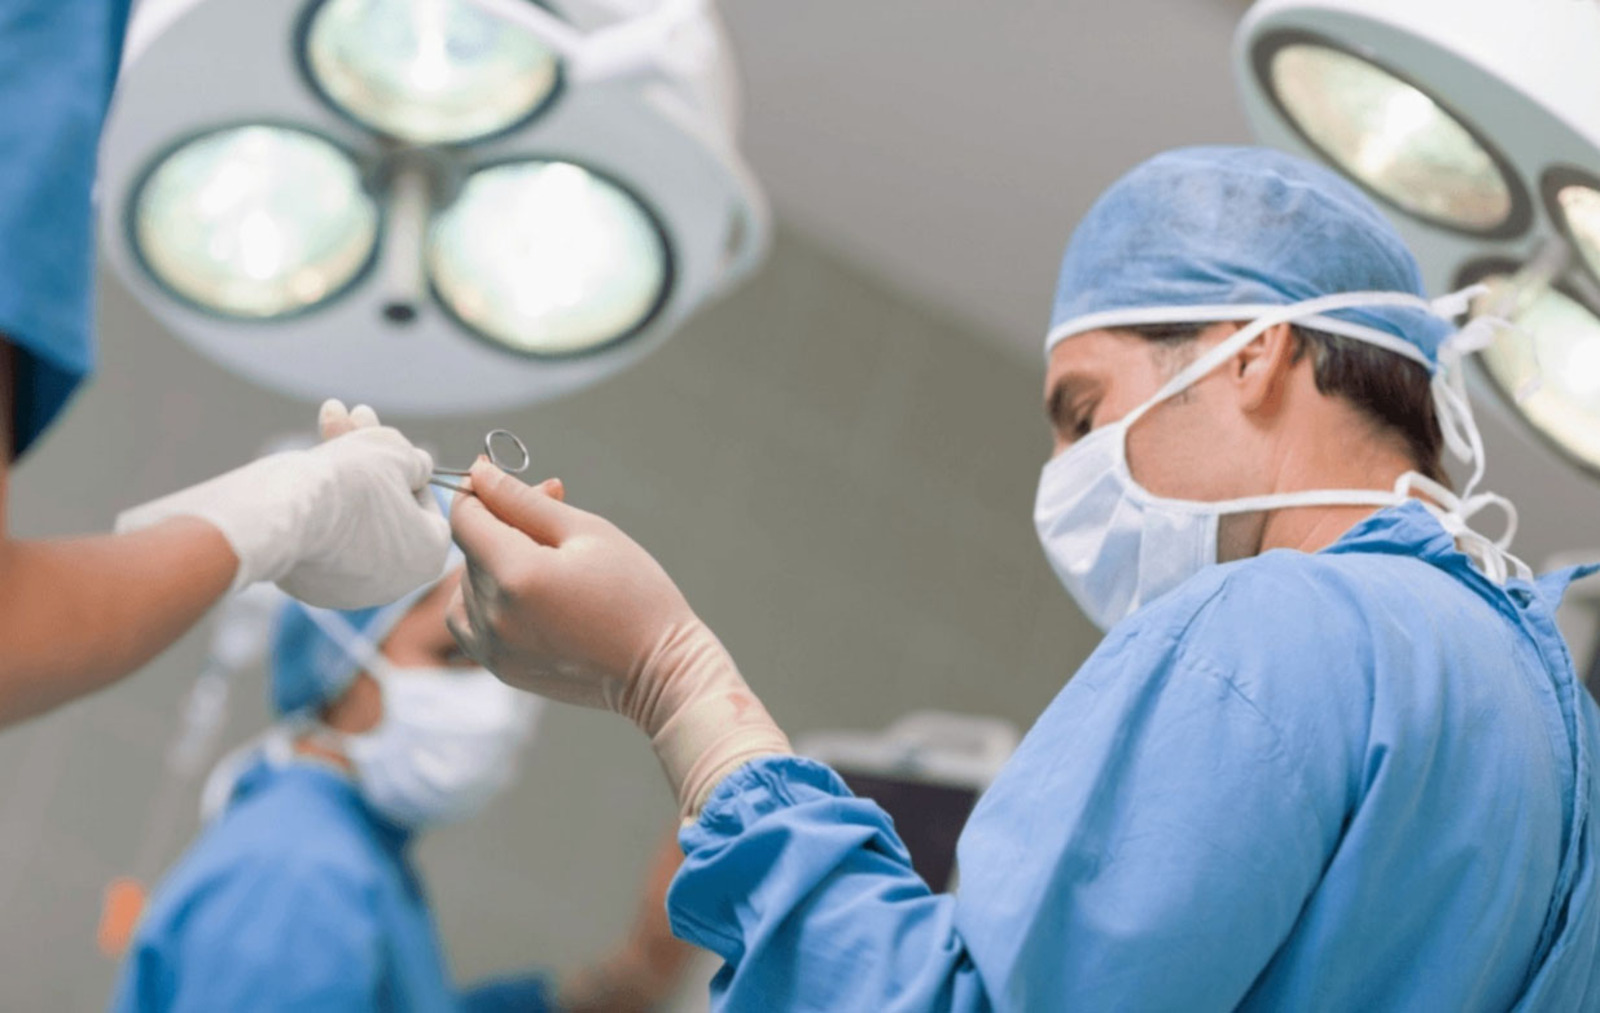 В Башкирии за год провели 54 операции по пересадке органов